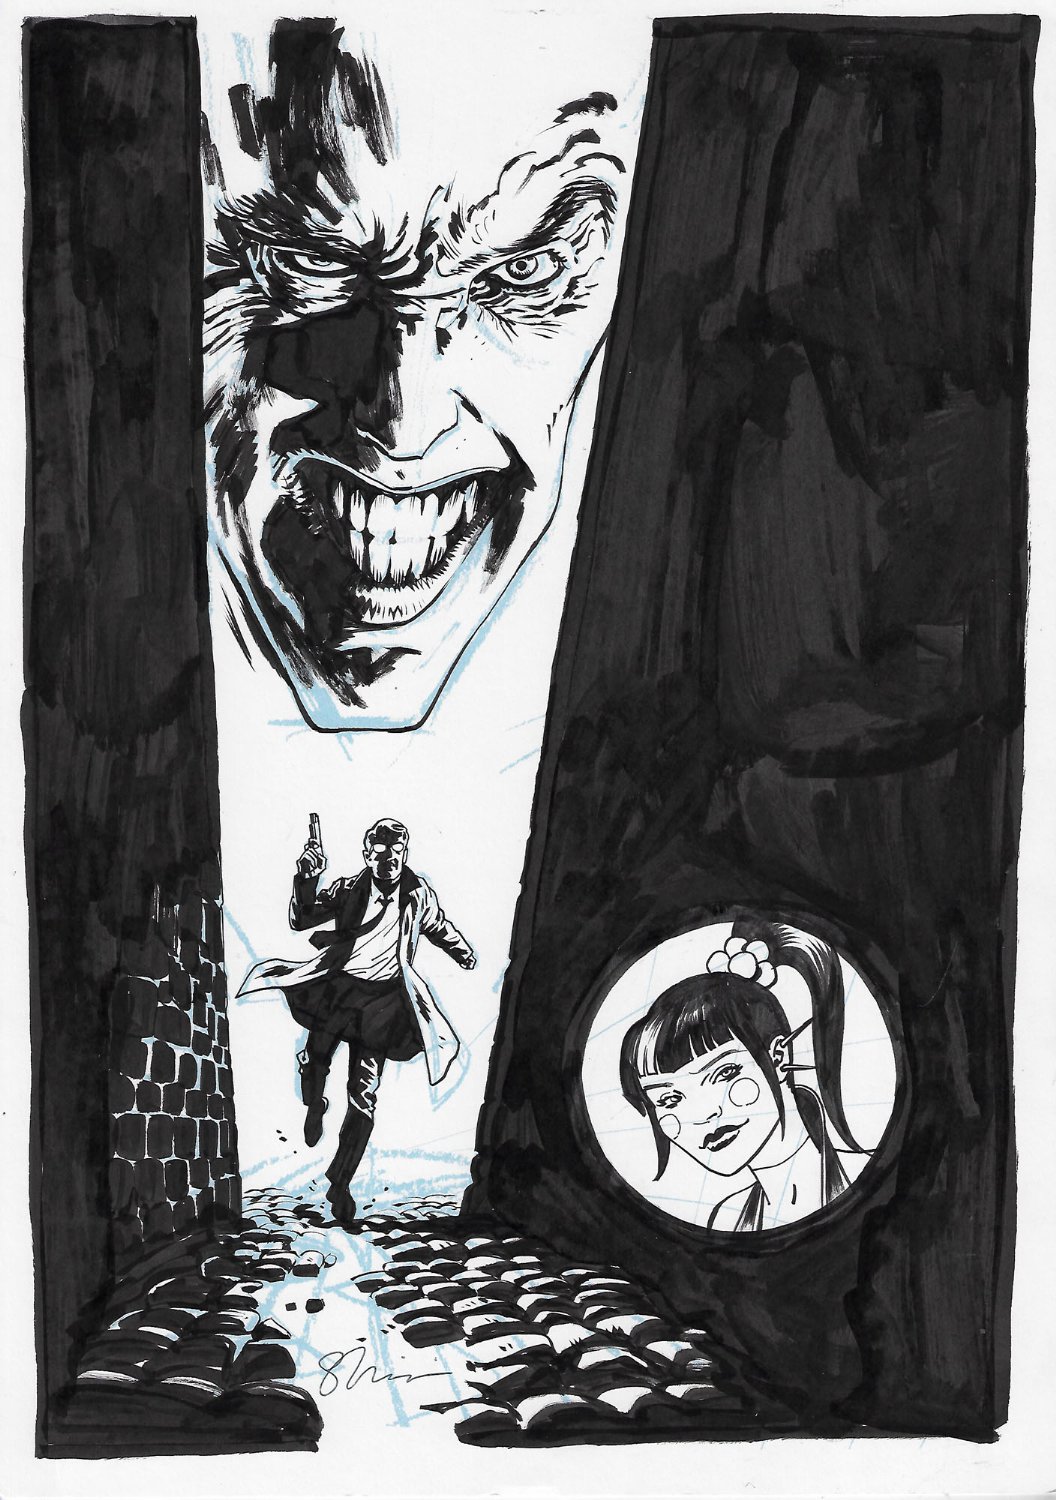 Joker Issue 5 Cover